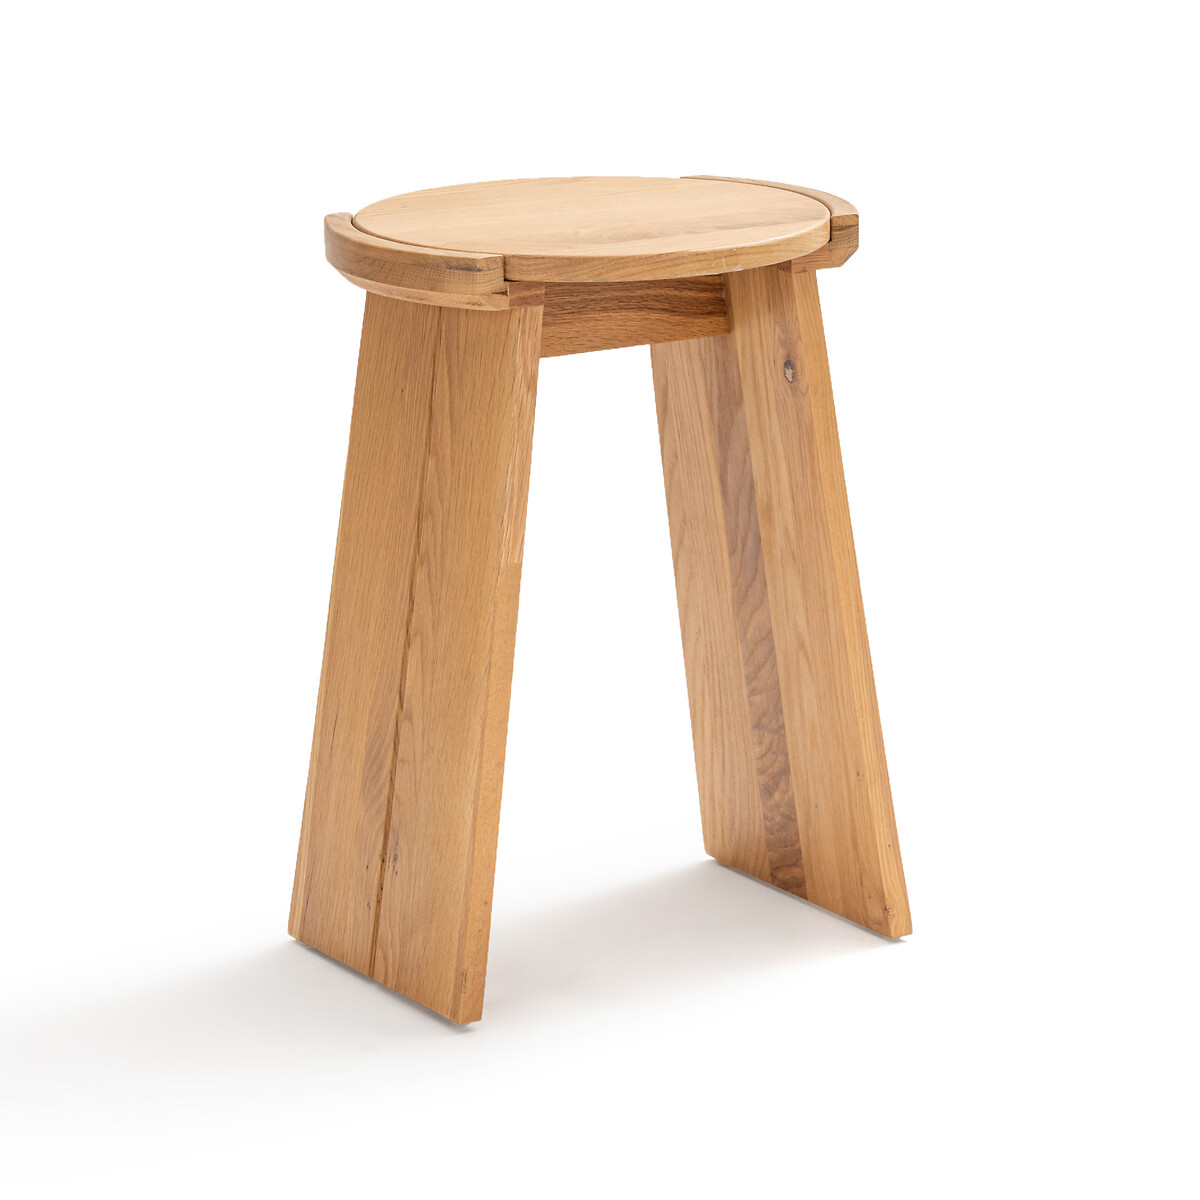 Стол диванный из массива дуба Tibet единый размер каштановый стол из массива дерева современный минималистичный стол из белого дуба стол для учебы